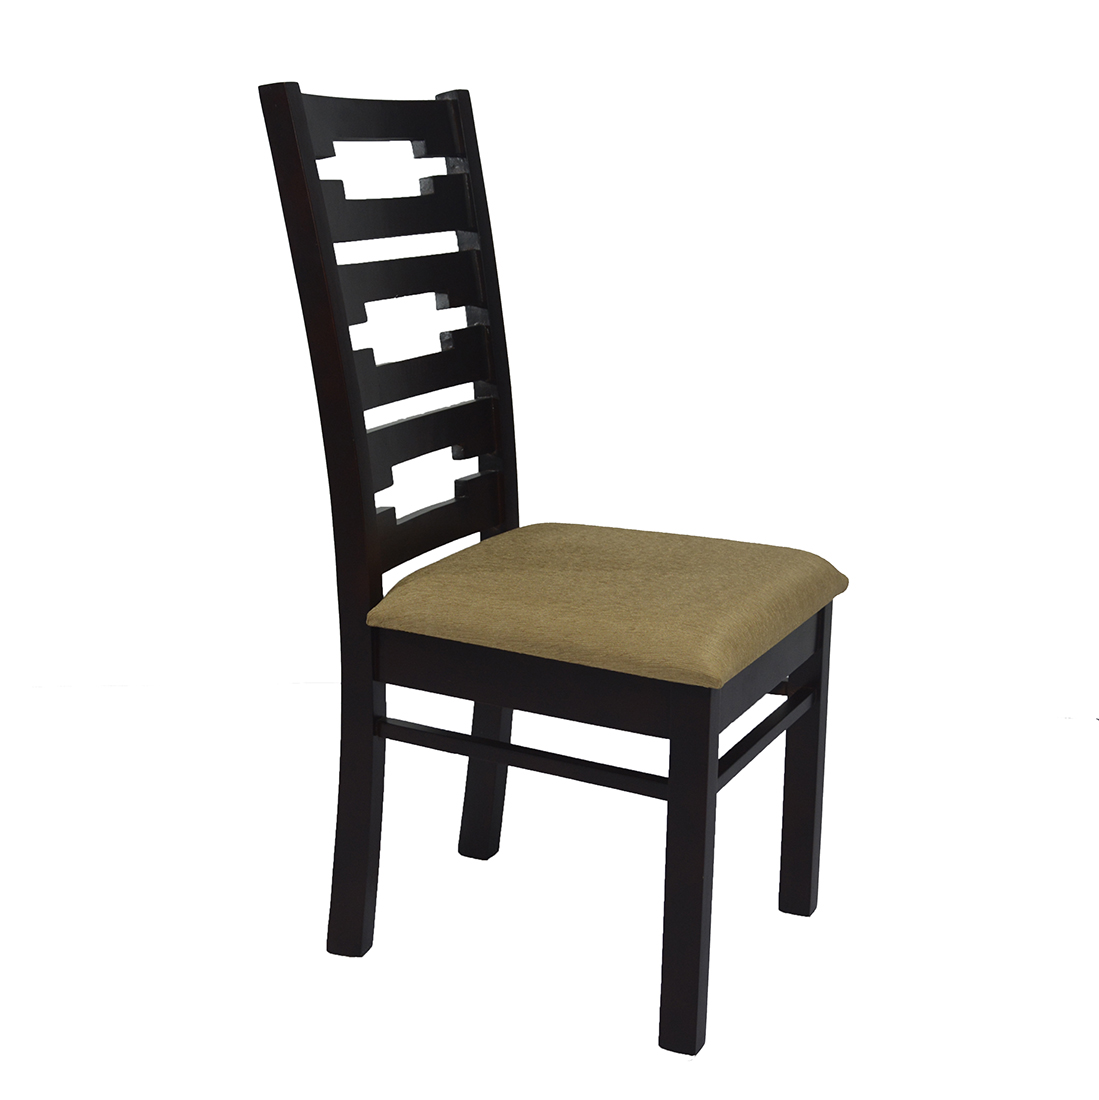 PKR ZDC 514 OCEAN Dininig Chair